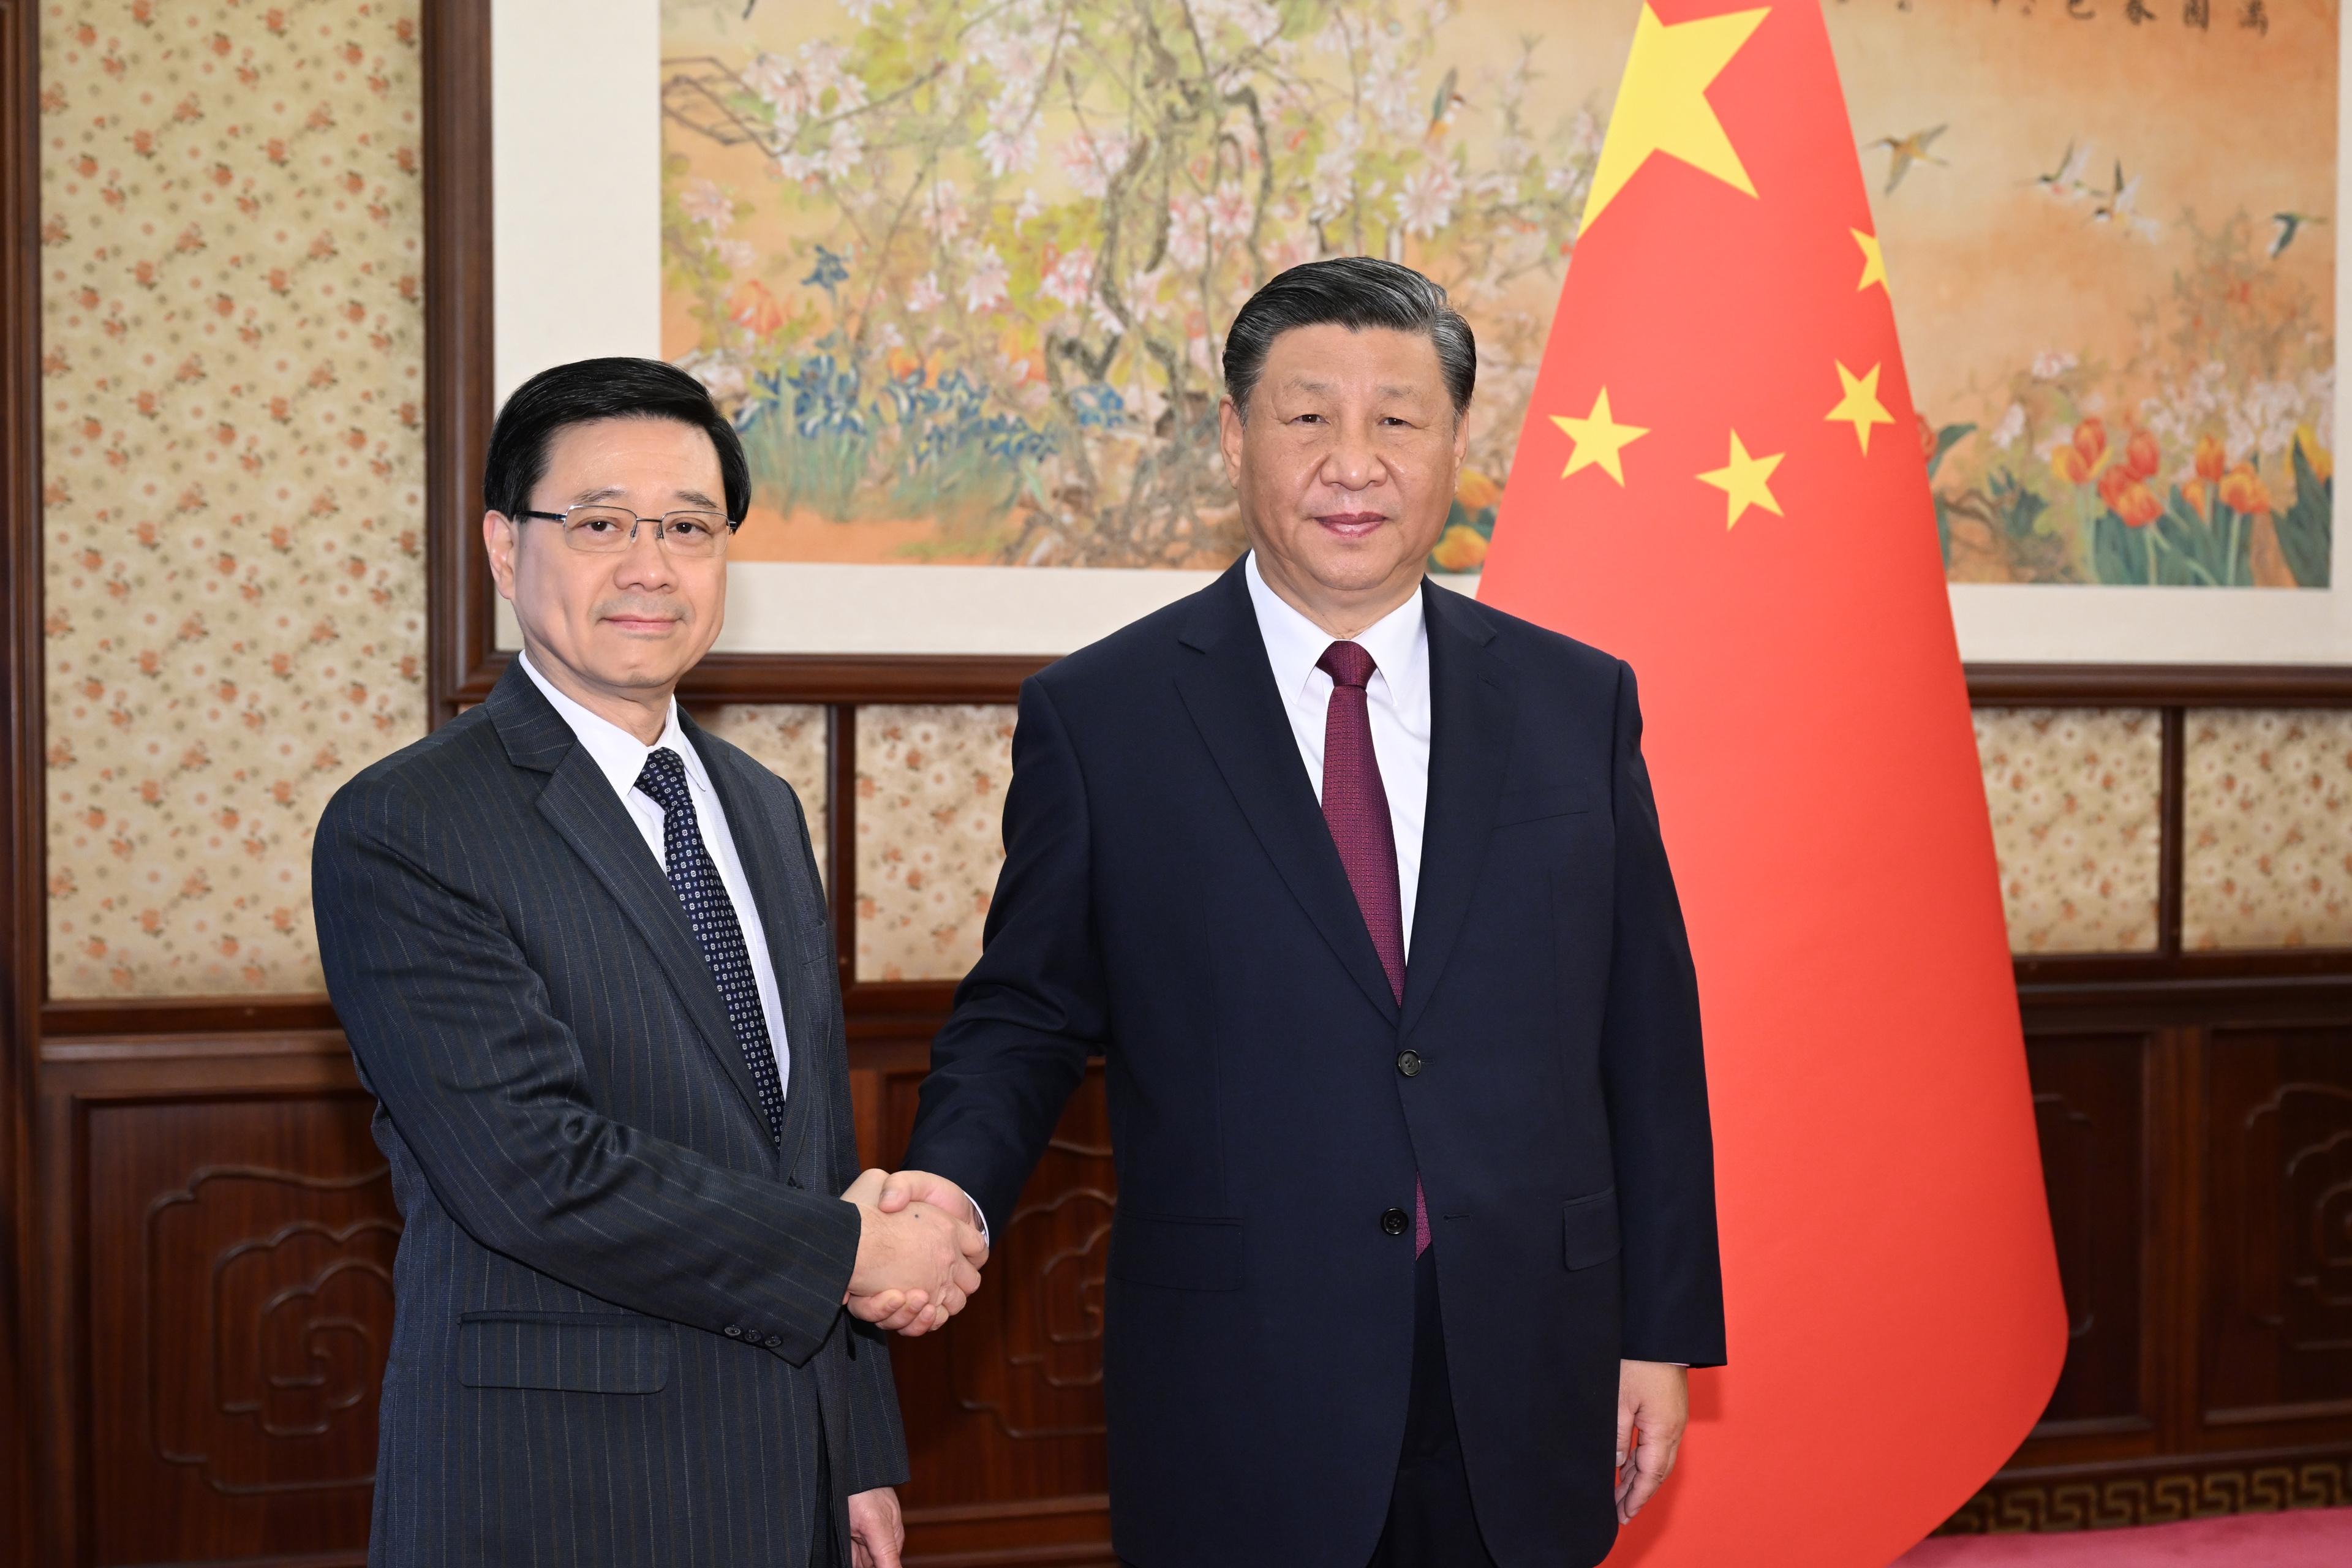 行政長官李家超（左）今日（十二月十八日）在北京向國家主席習近平（右）述職，匯報香港經濟、社會和政治等方面的最新情況。圖示二人在會面前合照。